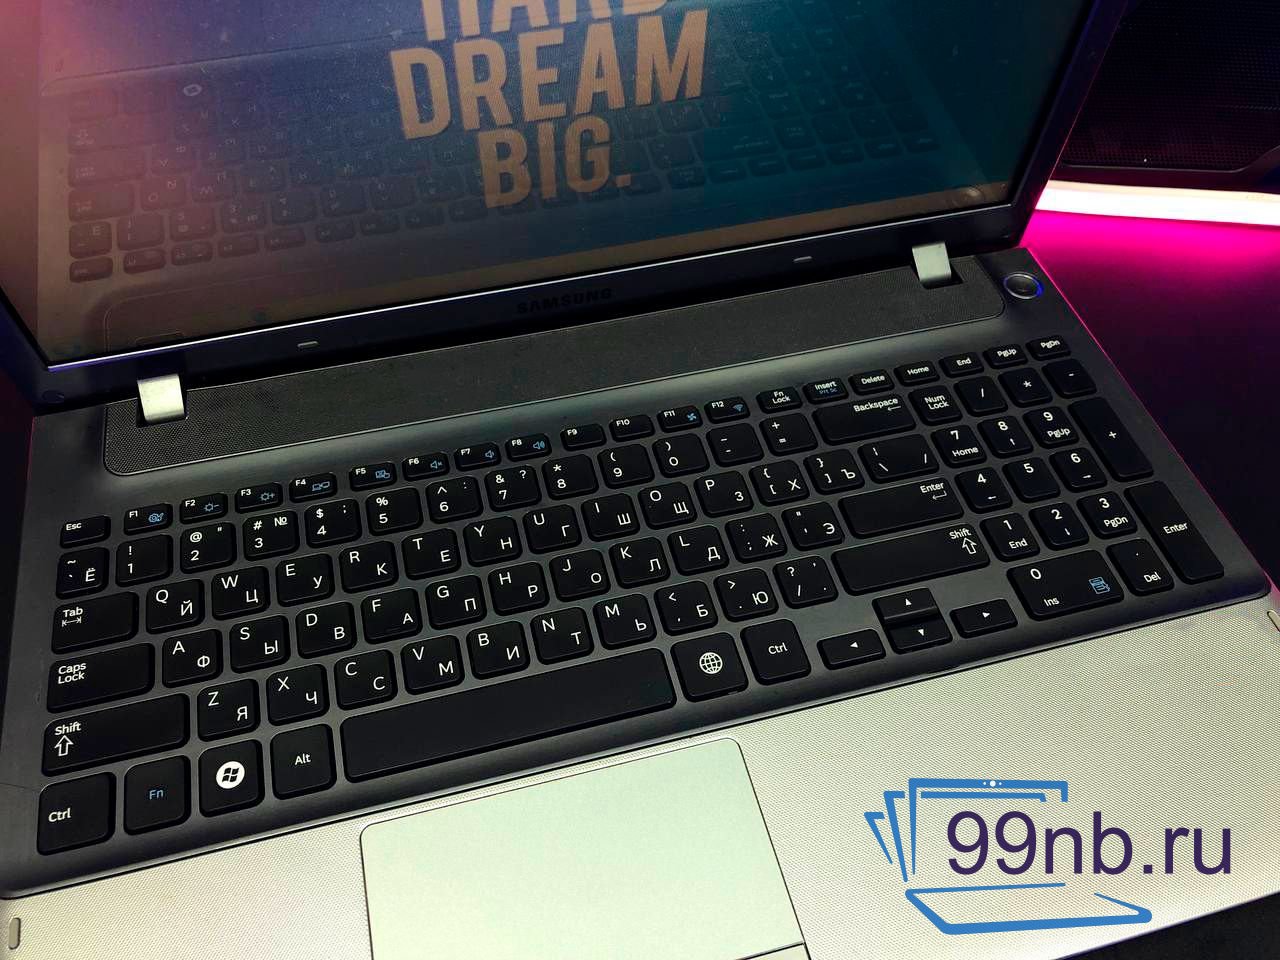  Офисный ноутбук Samsung i5/Intel/6GB озу